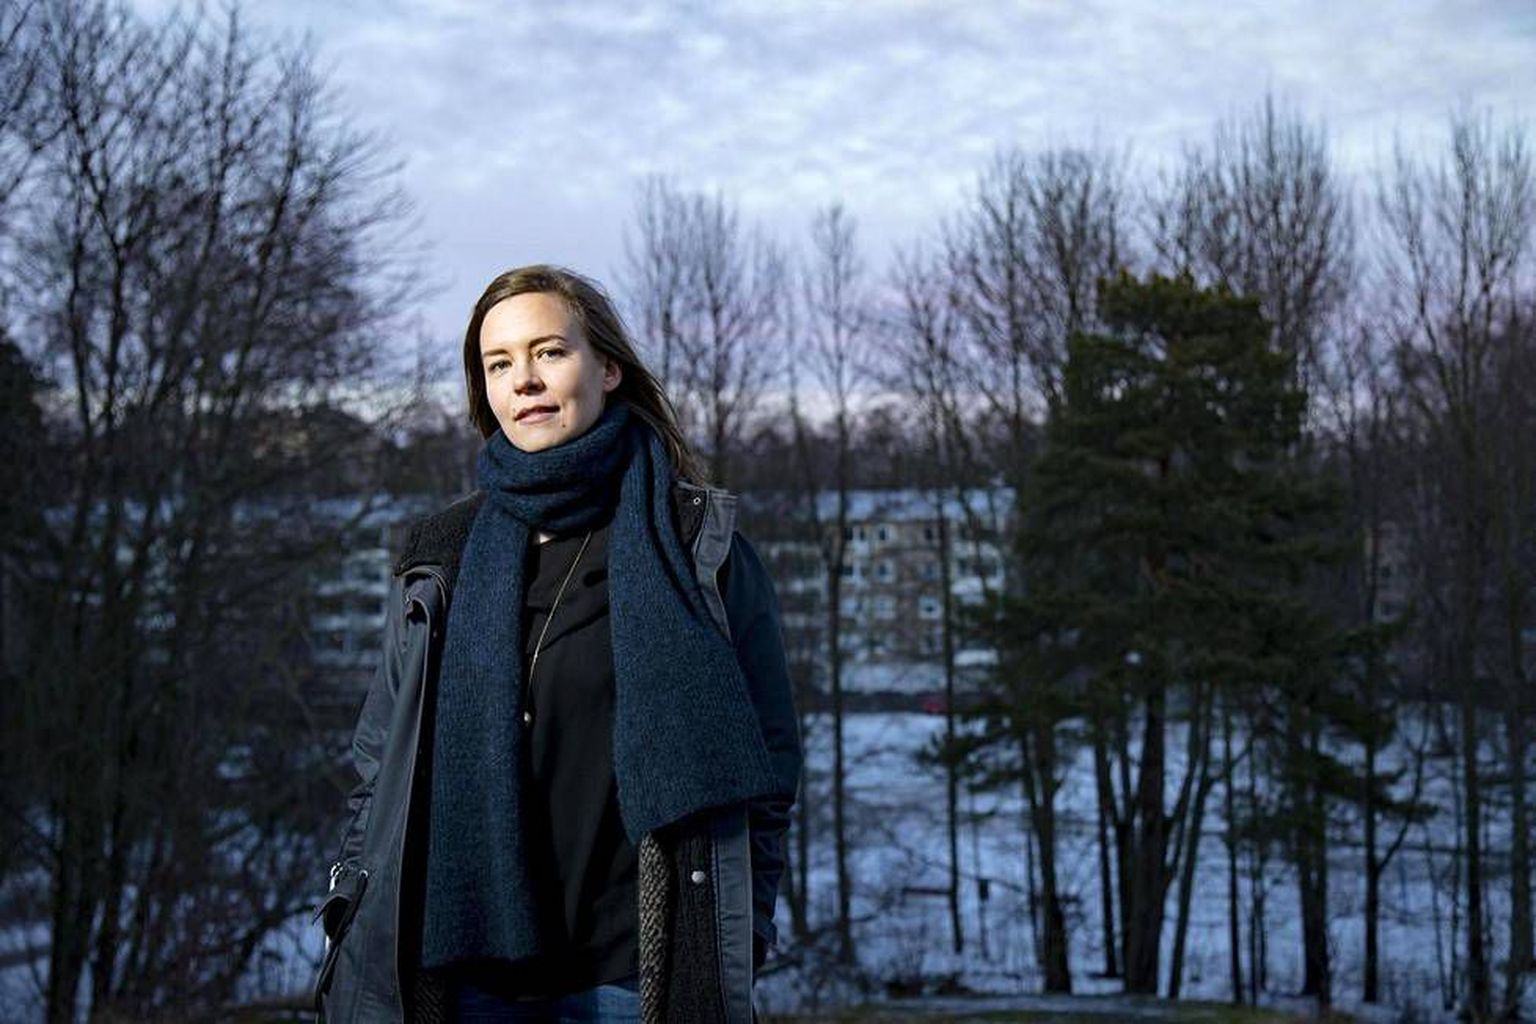 Soome 100: taskuraha on suurepärane võimalus lapsele rahamaailma tutvustada, usub 35aastane Essi Lindberg